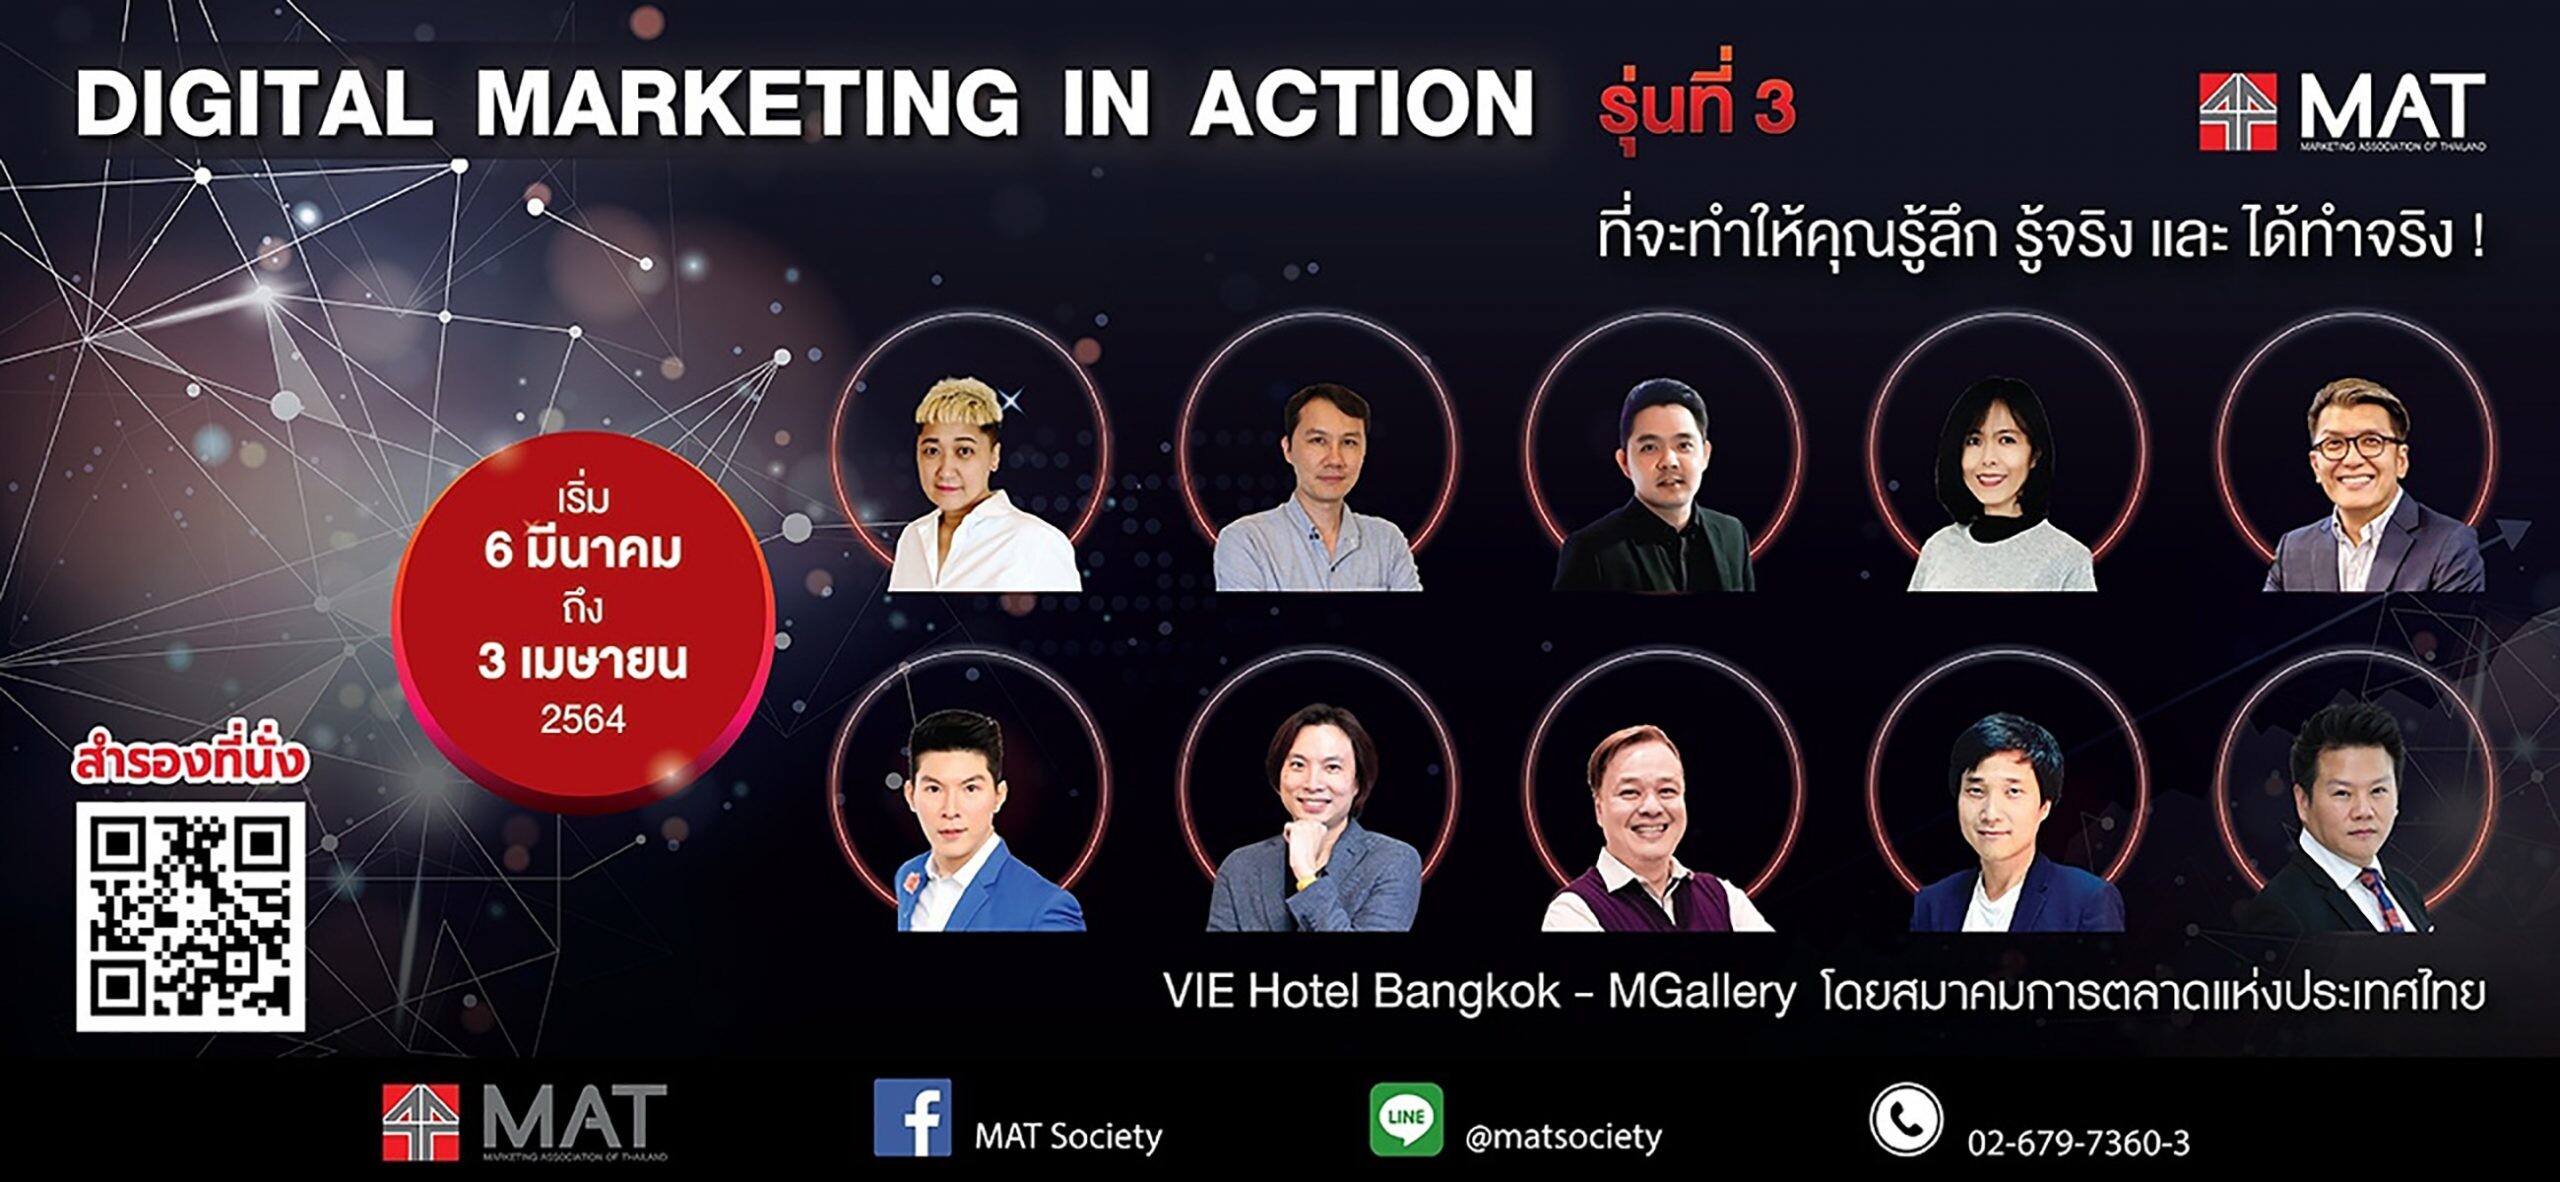 สมาคมการตลาดแห่งประเทศไทย ขอเชิญเข้าร่วมคอร์ส Digital Marketing In Action รุ่นที่ 3"